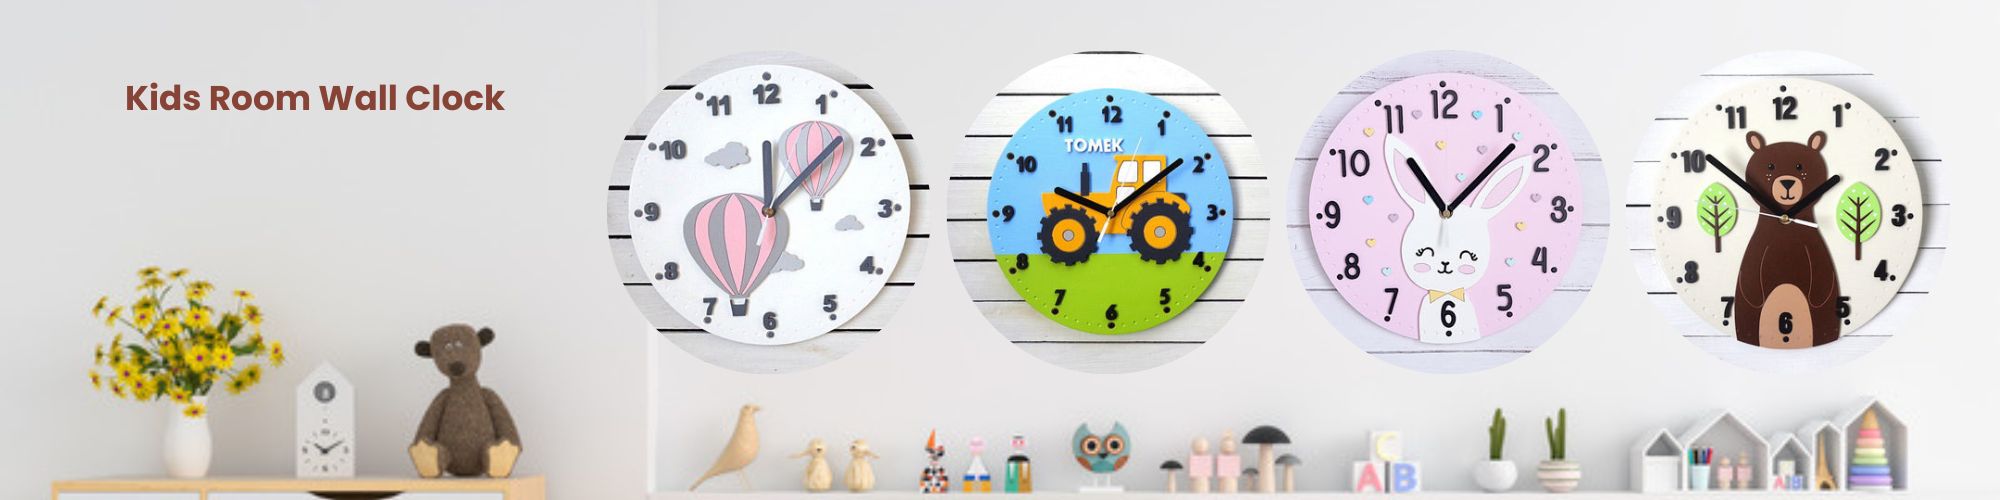 kids wall clock